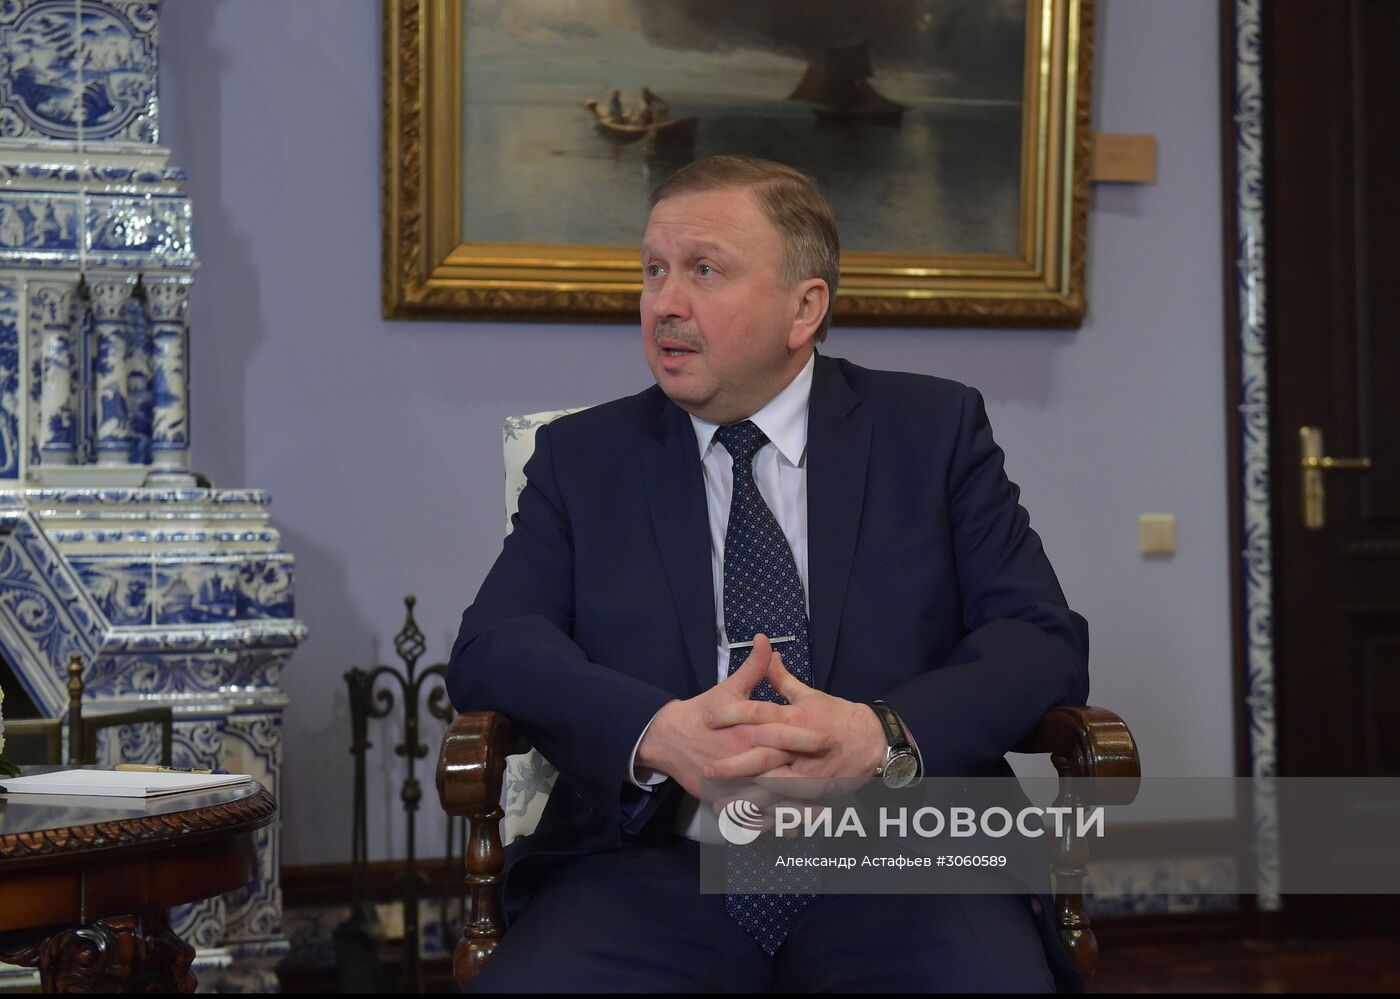 Председатель правительства РФ Д. Медведев встретился с премьер-министром Белоруссии А. Кобяковым